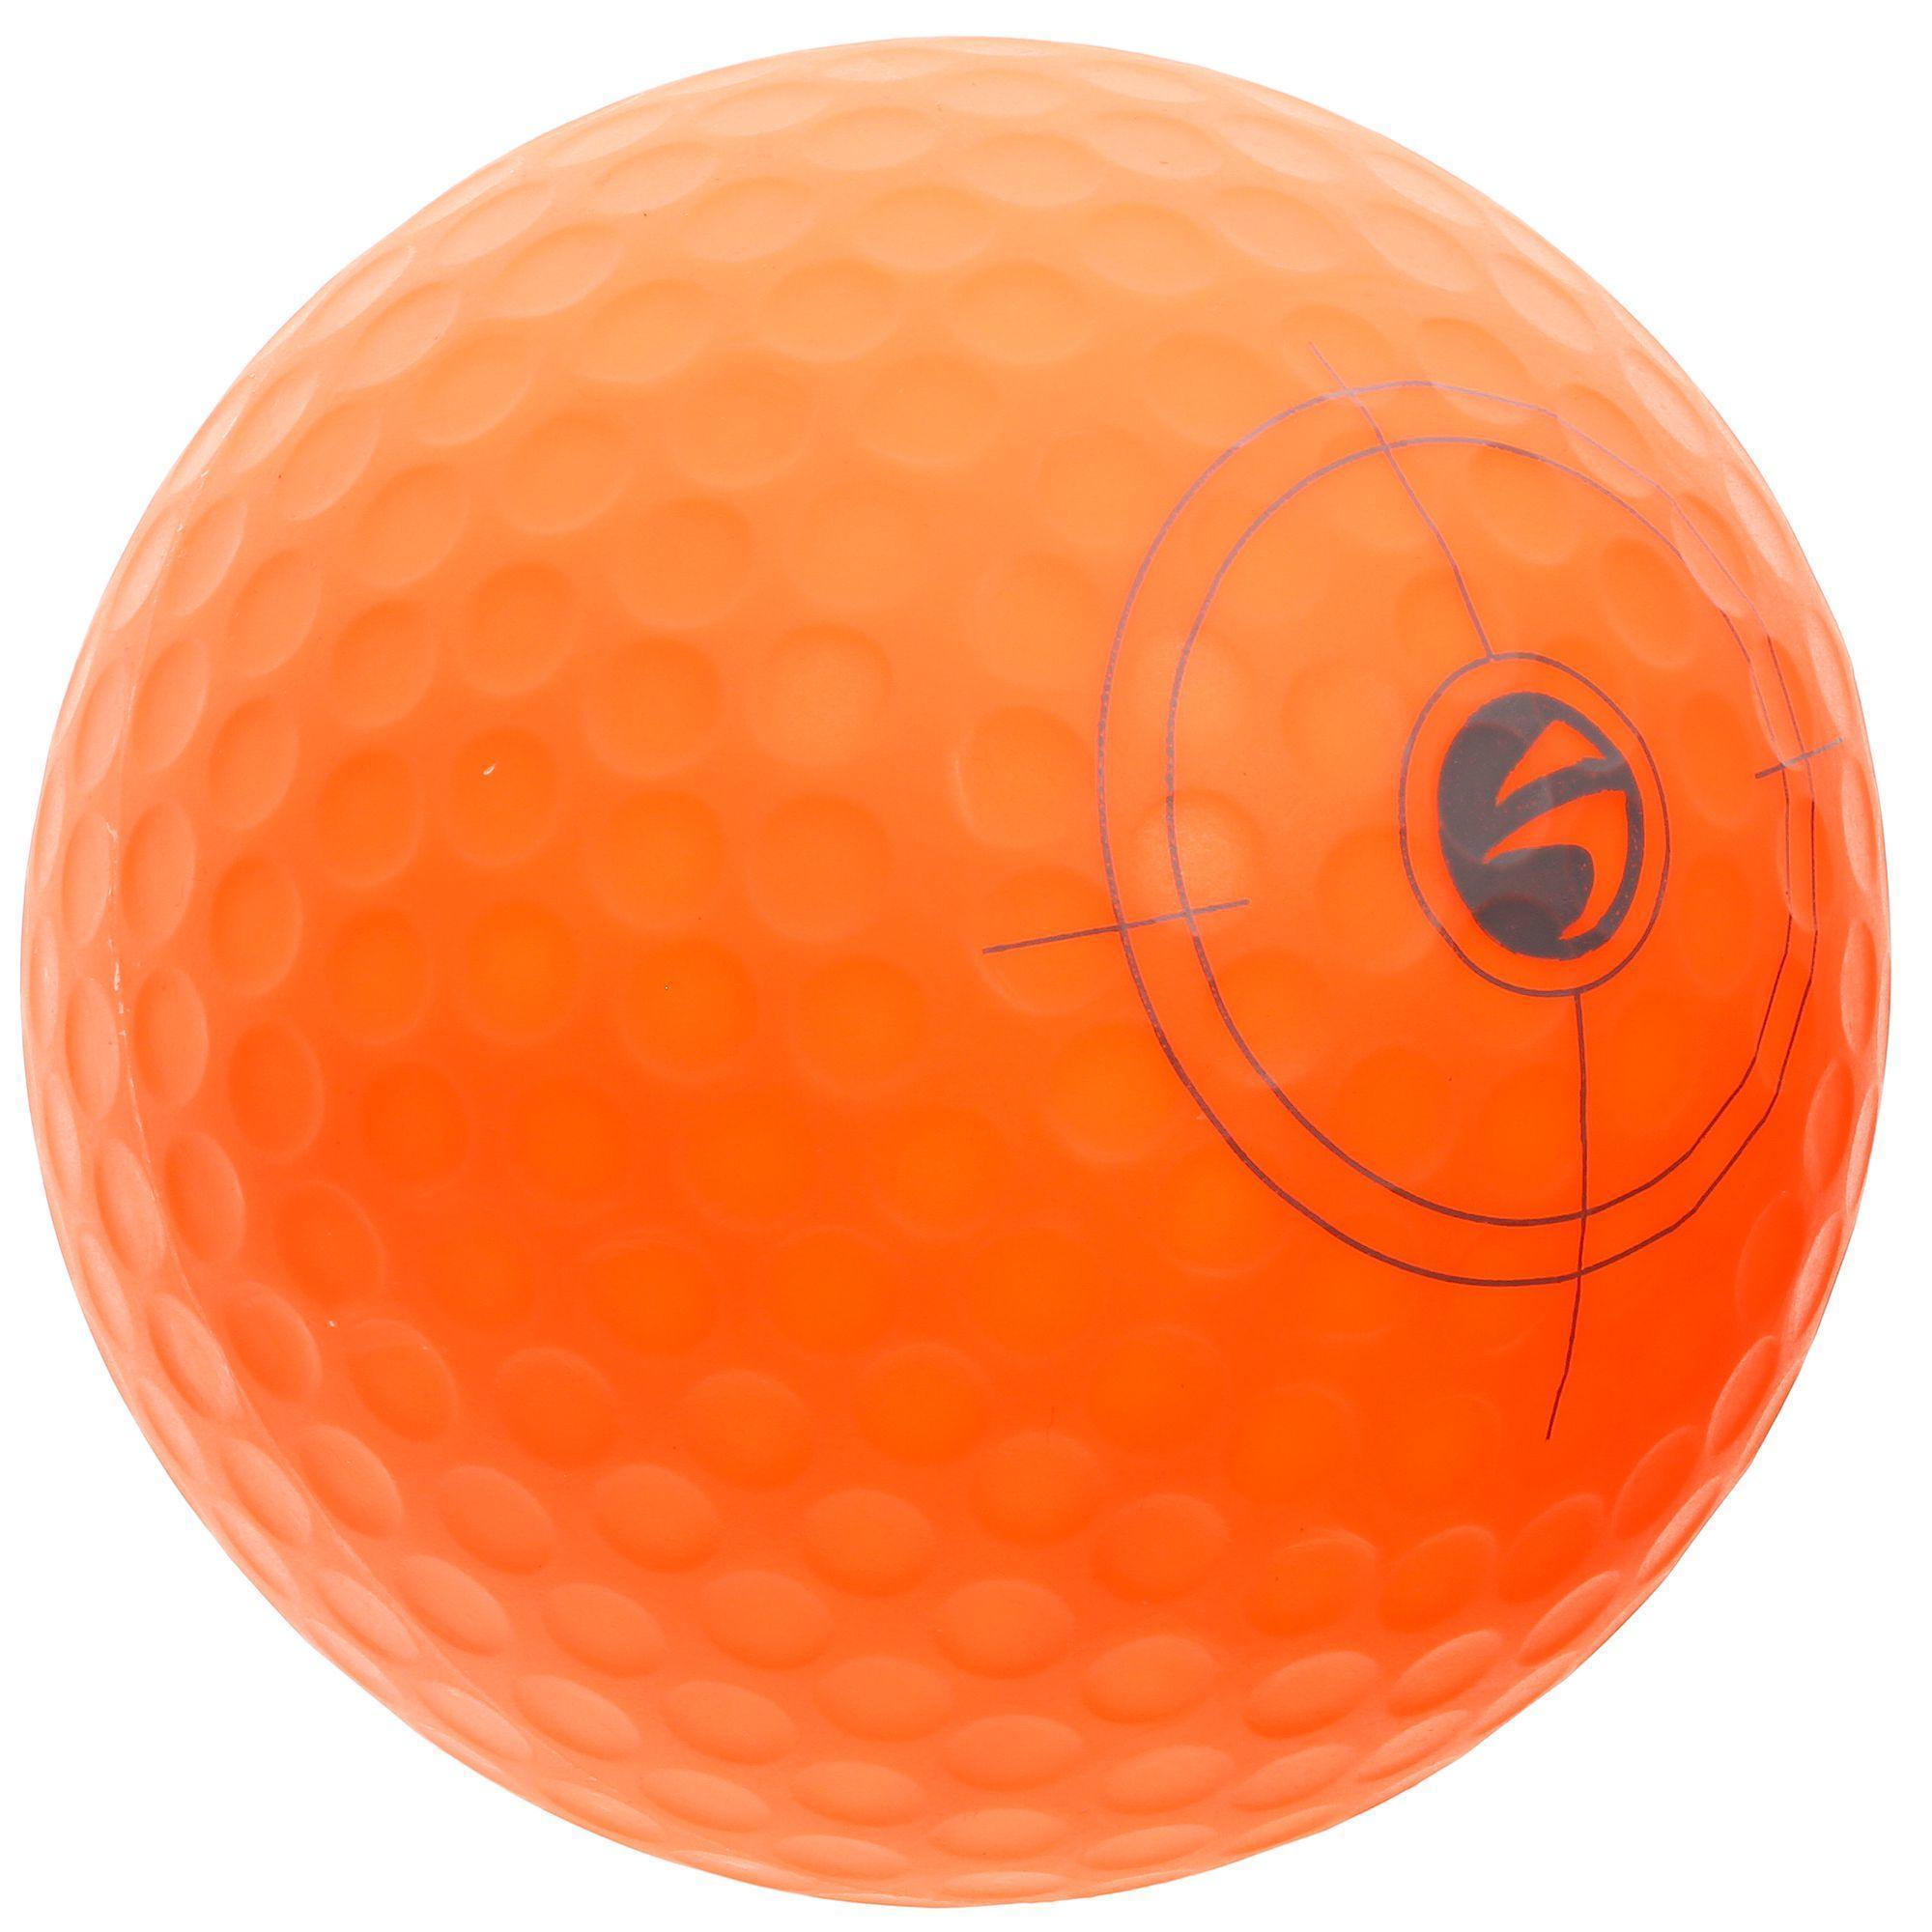 decathlon golf balls review